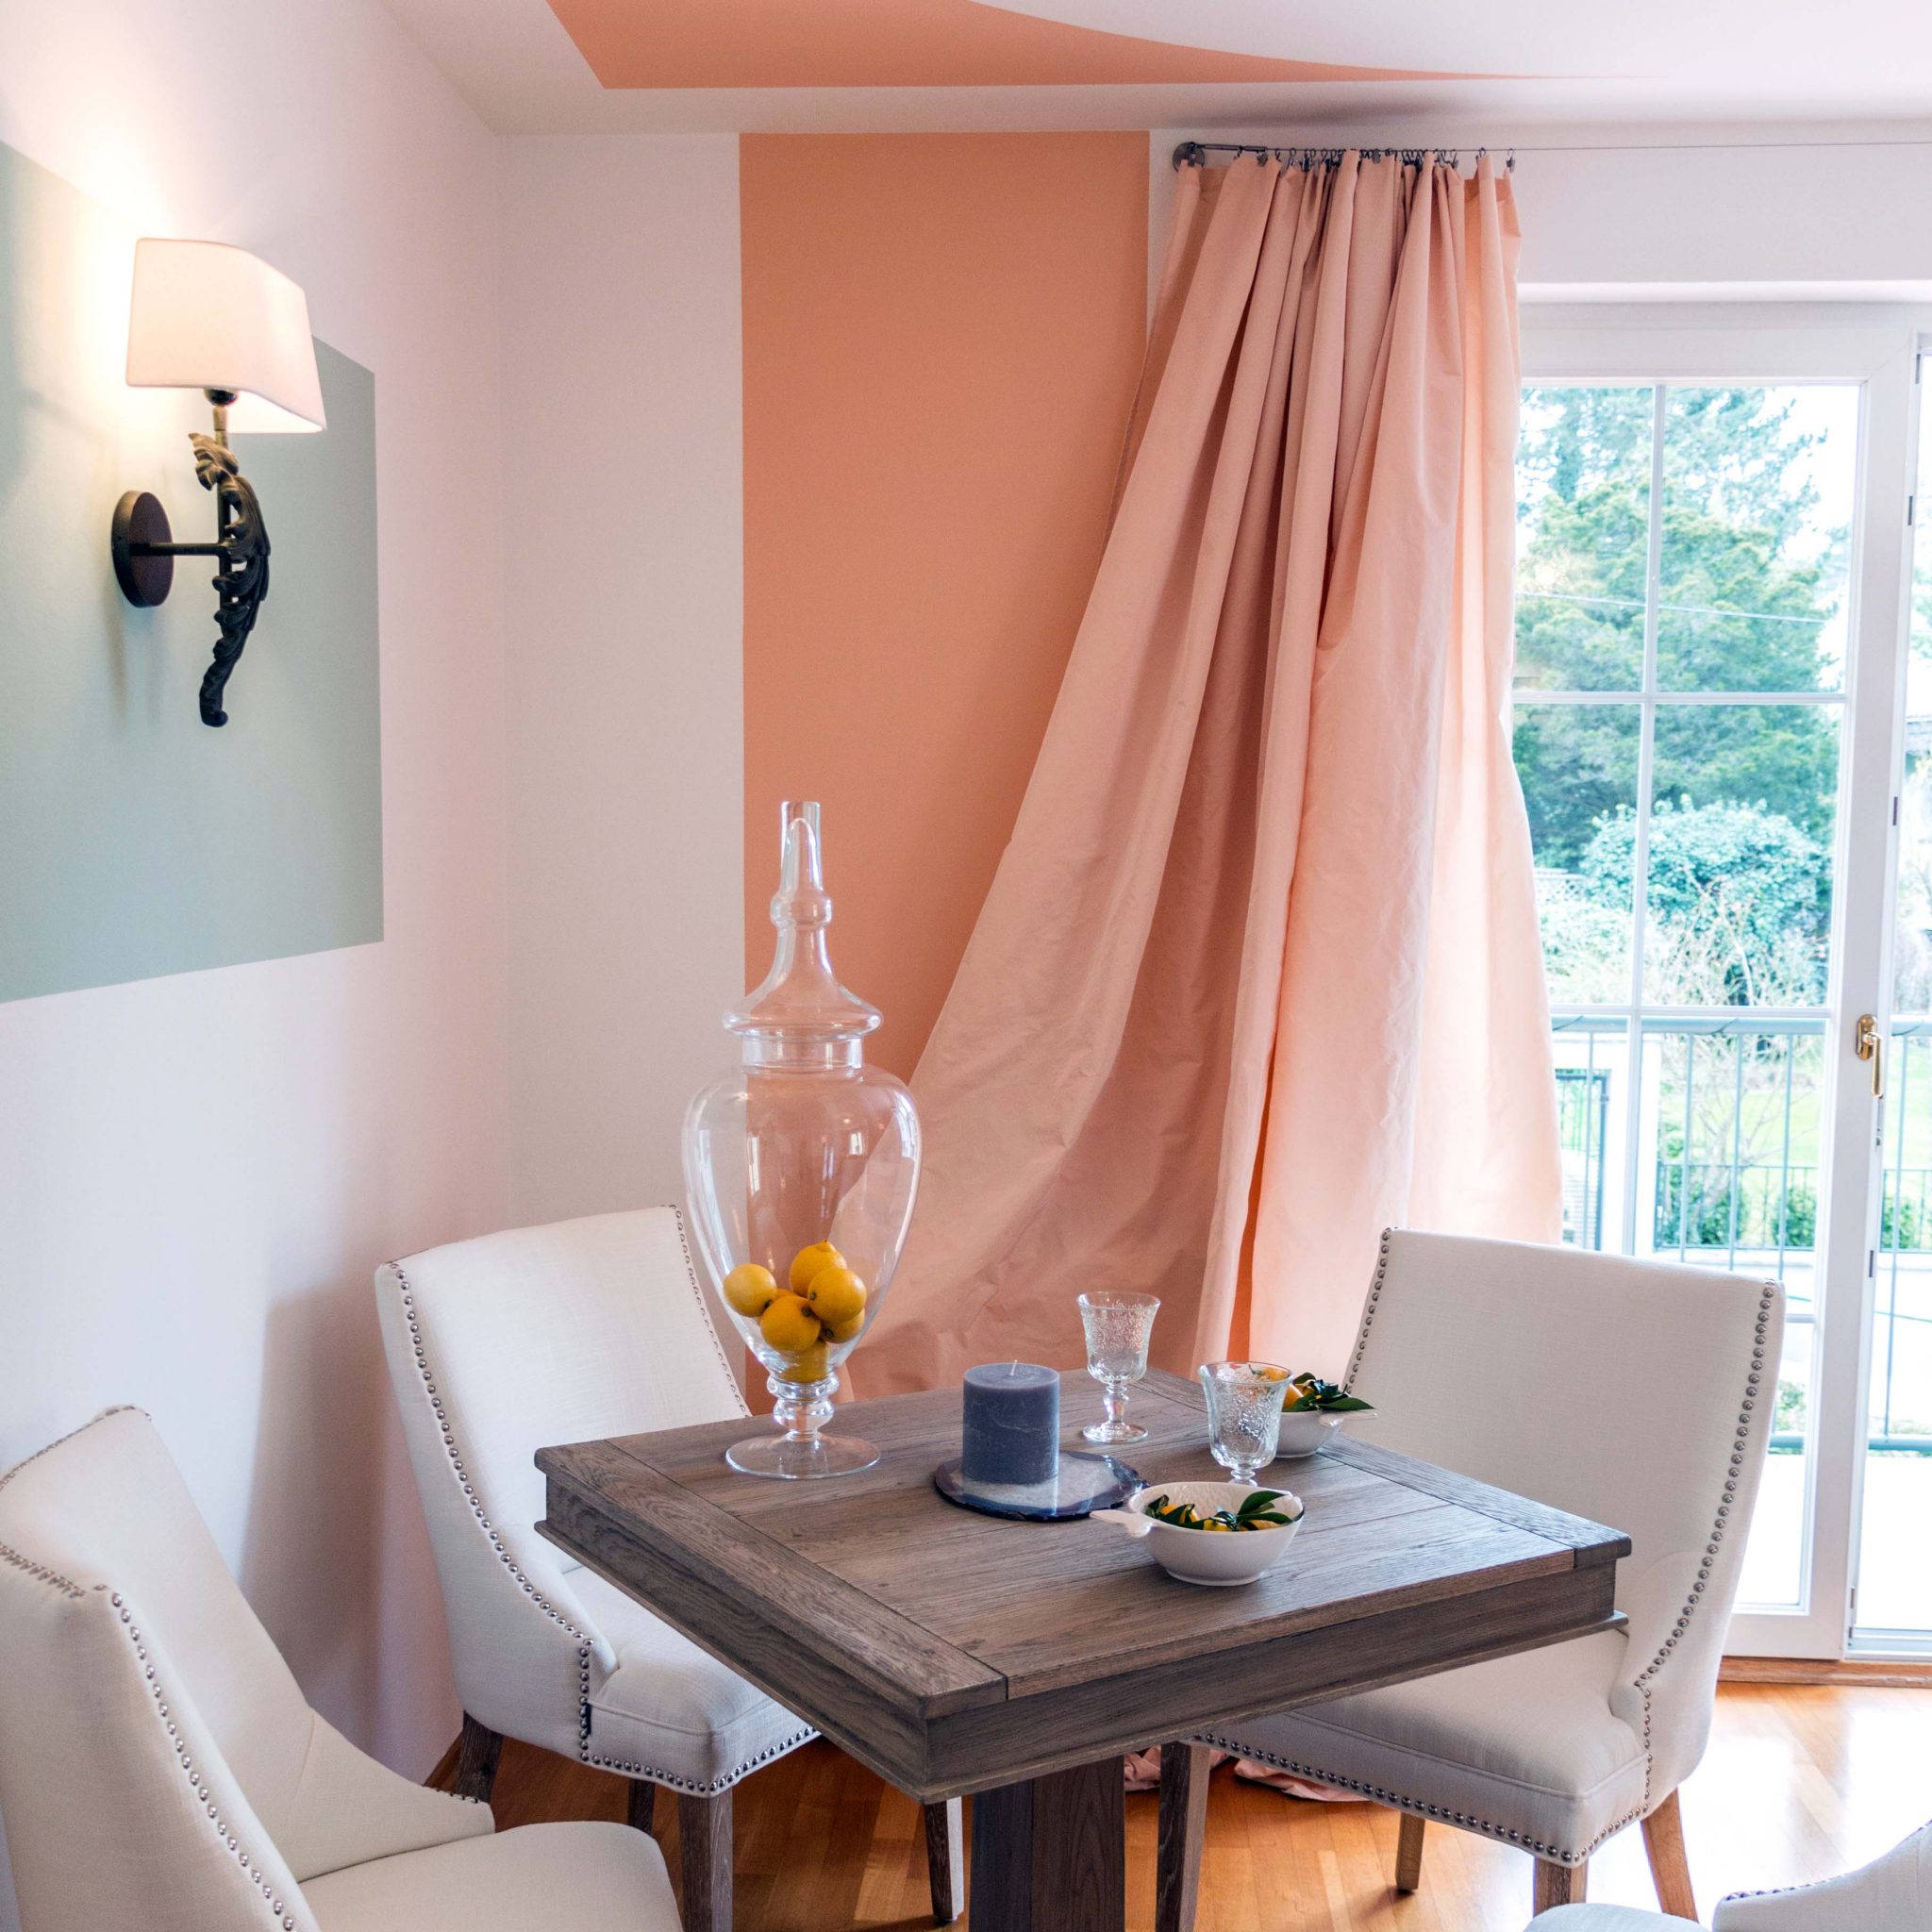 Quadratischer Holztisch vor aprikot-farbenem Vorhang mit Blick auf den Balkon.